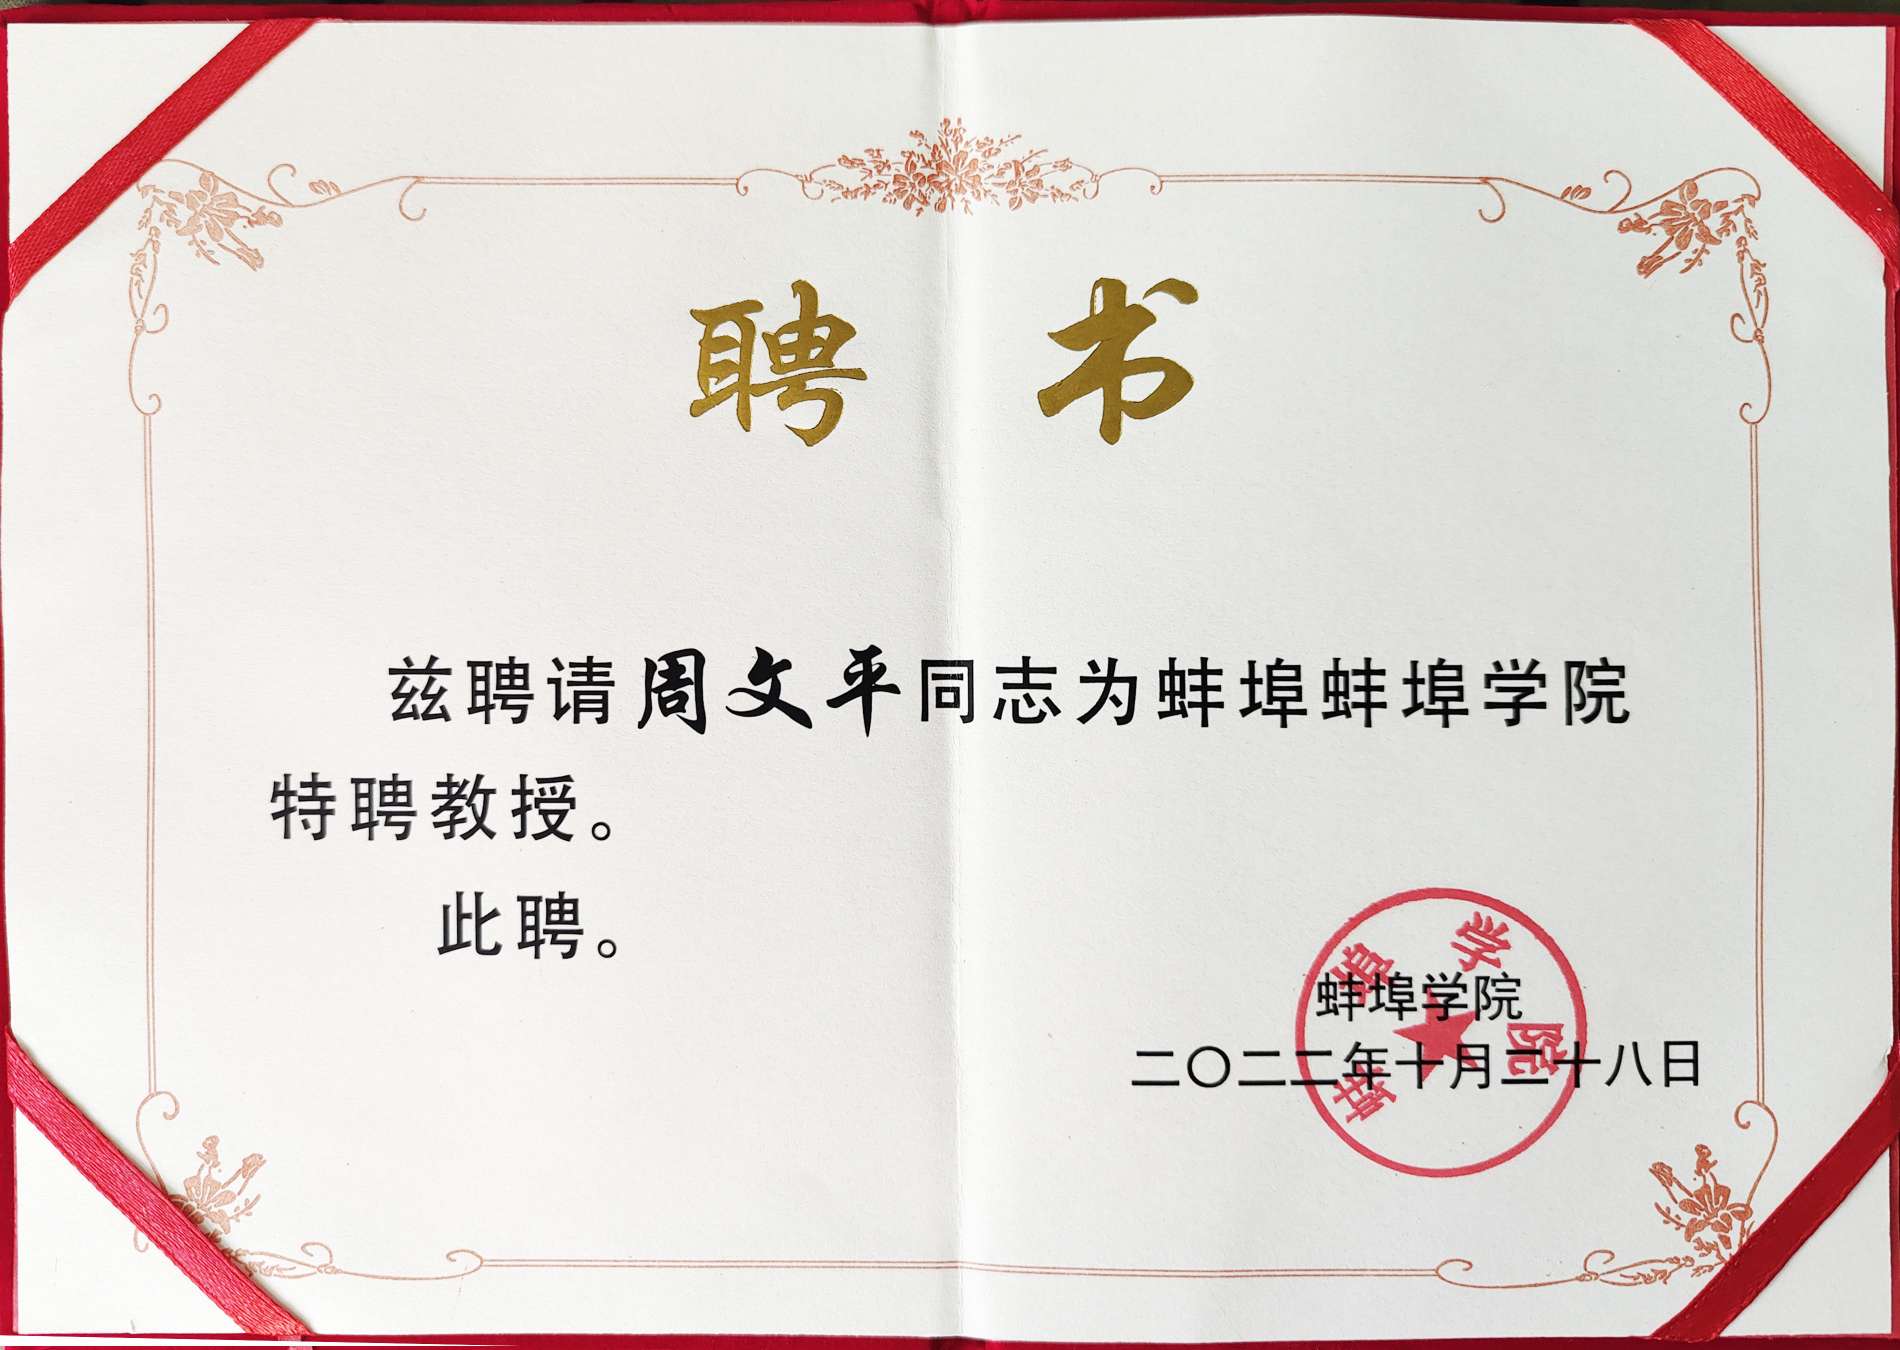 منحت كلية Bengbu شهادة "الأستاذ المتميز" Long Hua Zhou Wenping الفخرية!